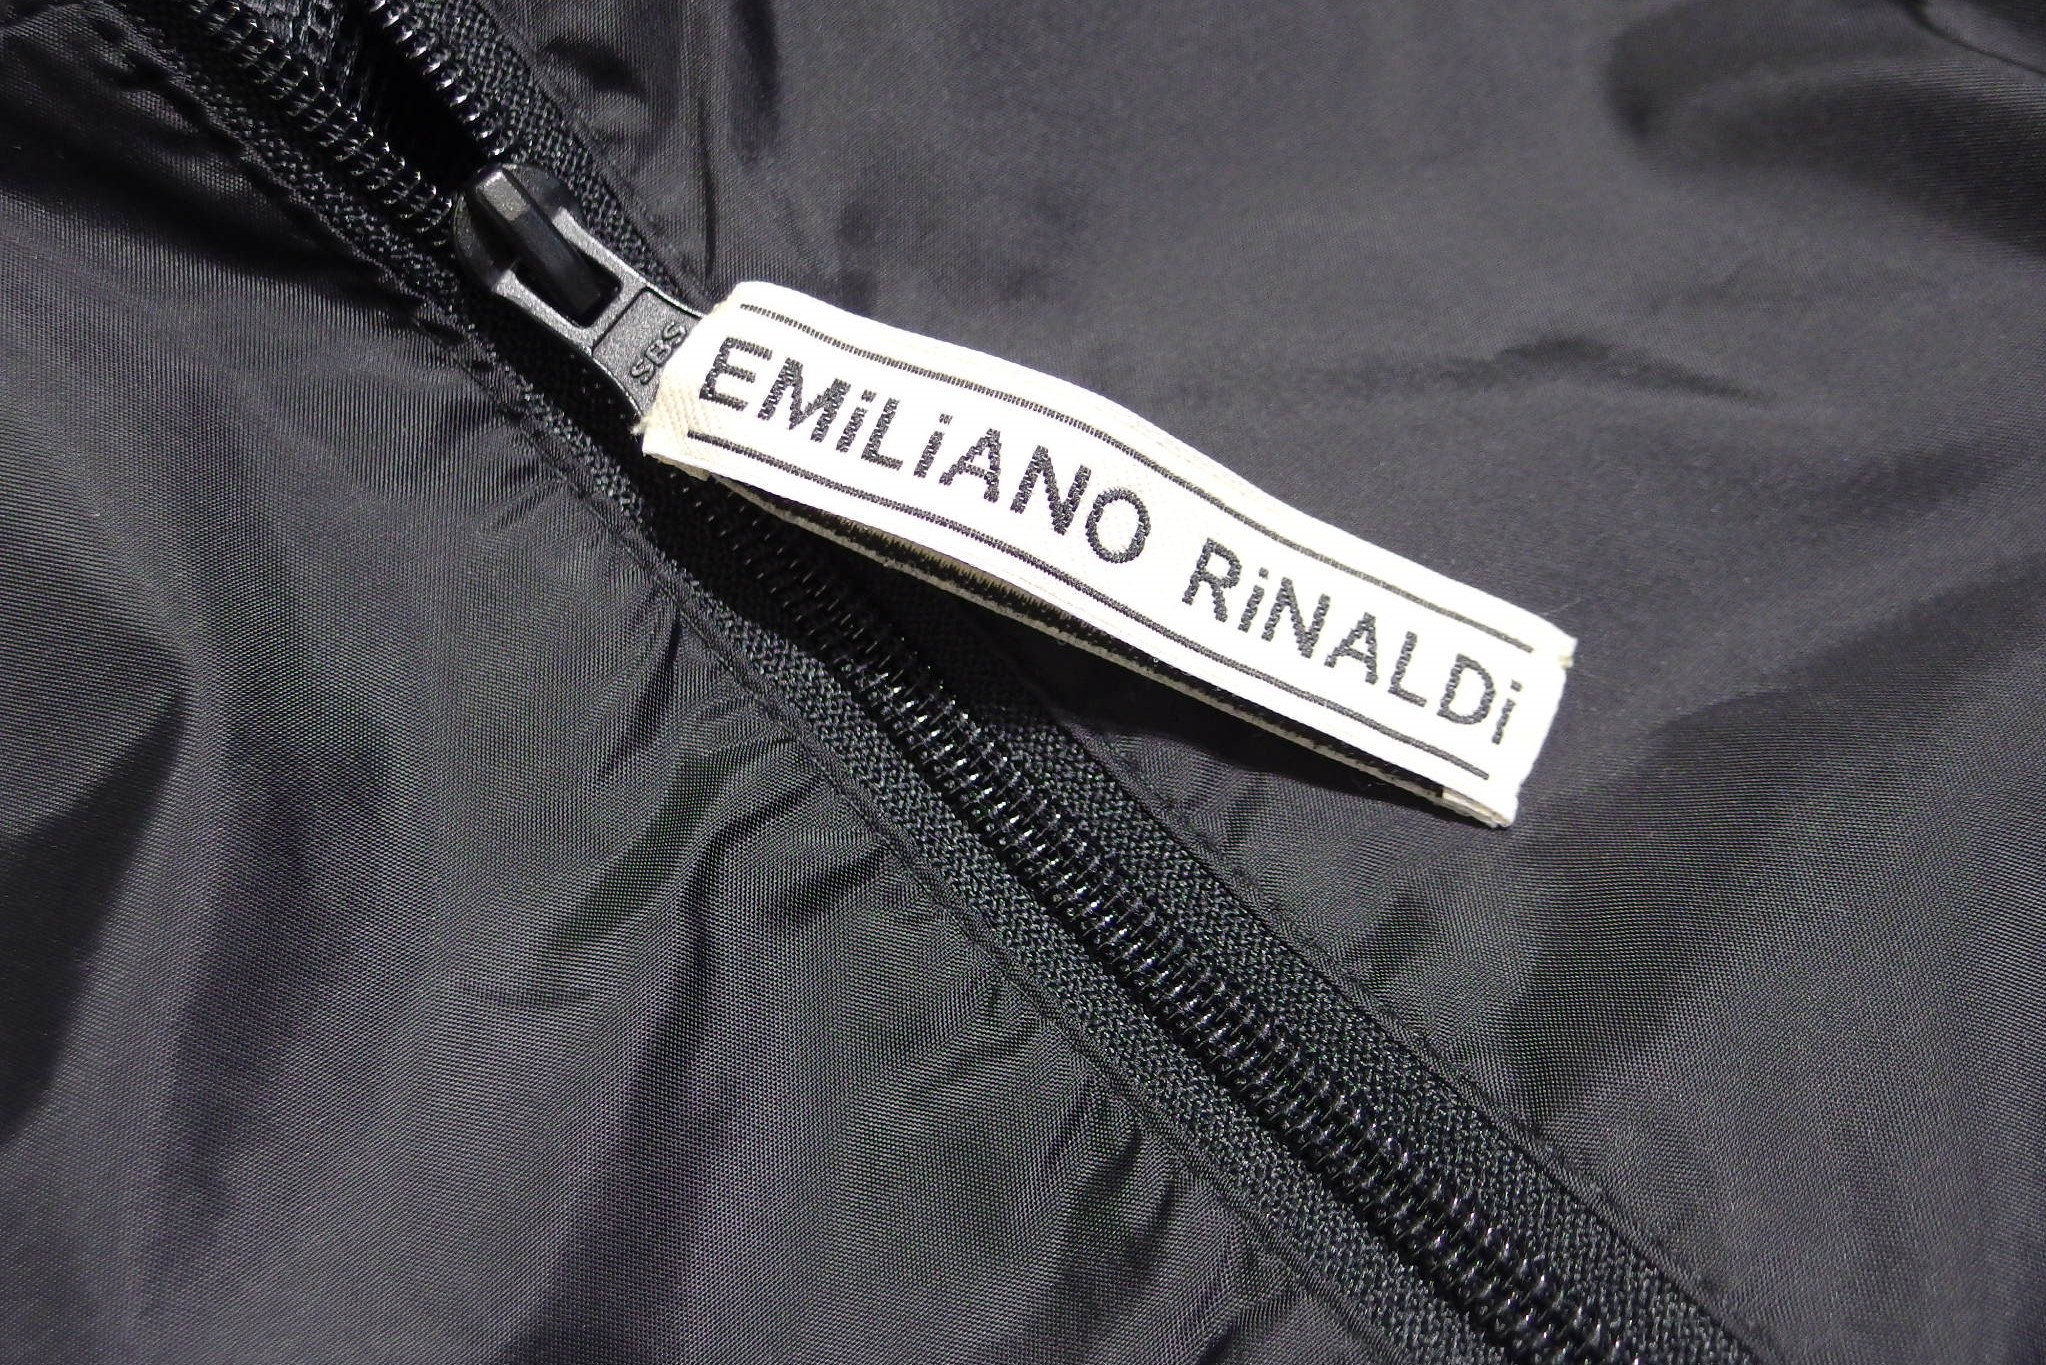 EMiLiANO RiNALDi(エミリアーノ リナルディ)ノスタルジックな洋服 